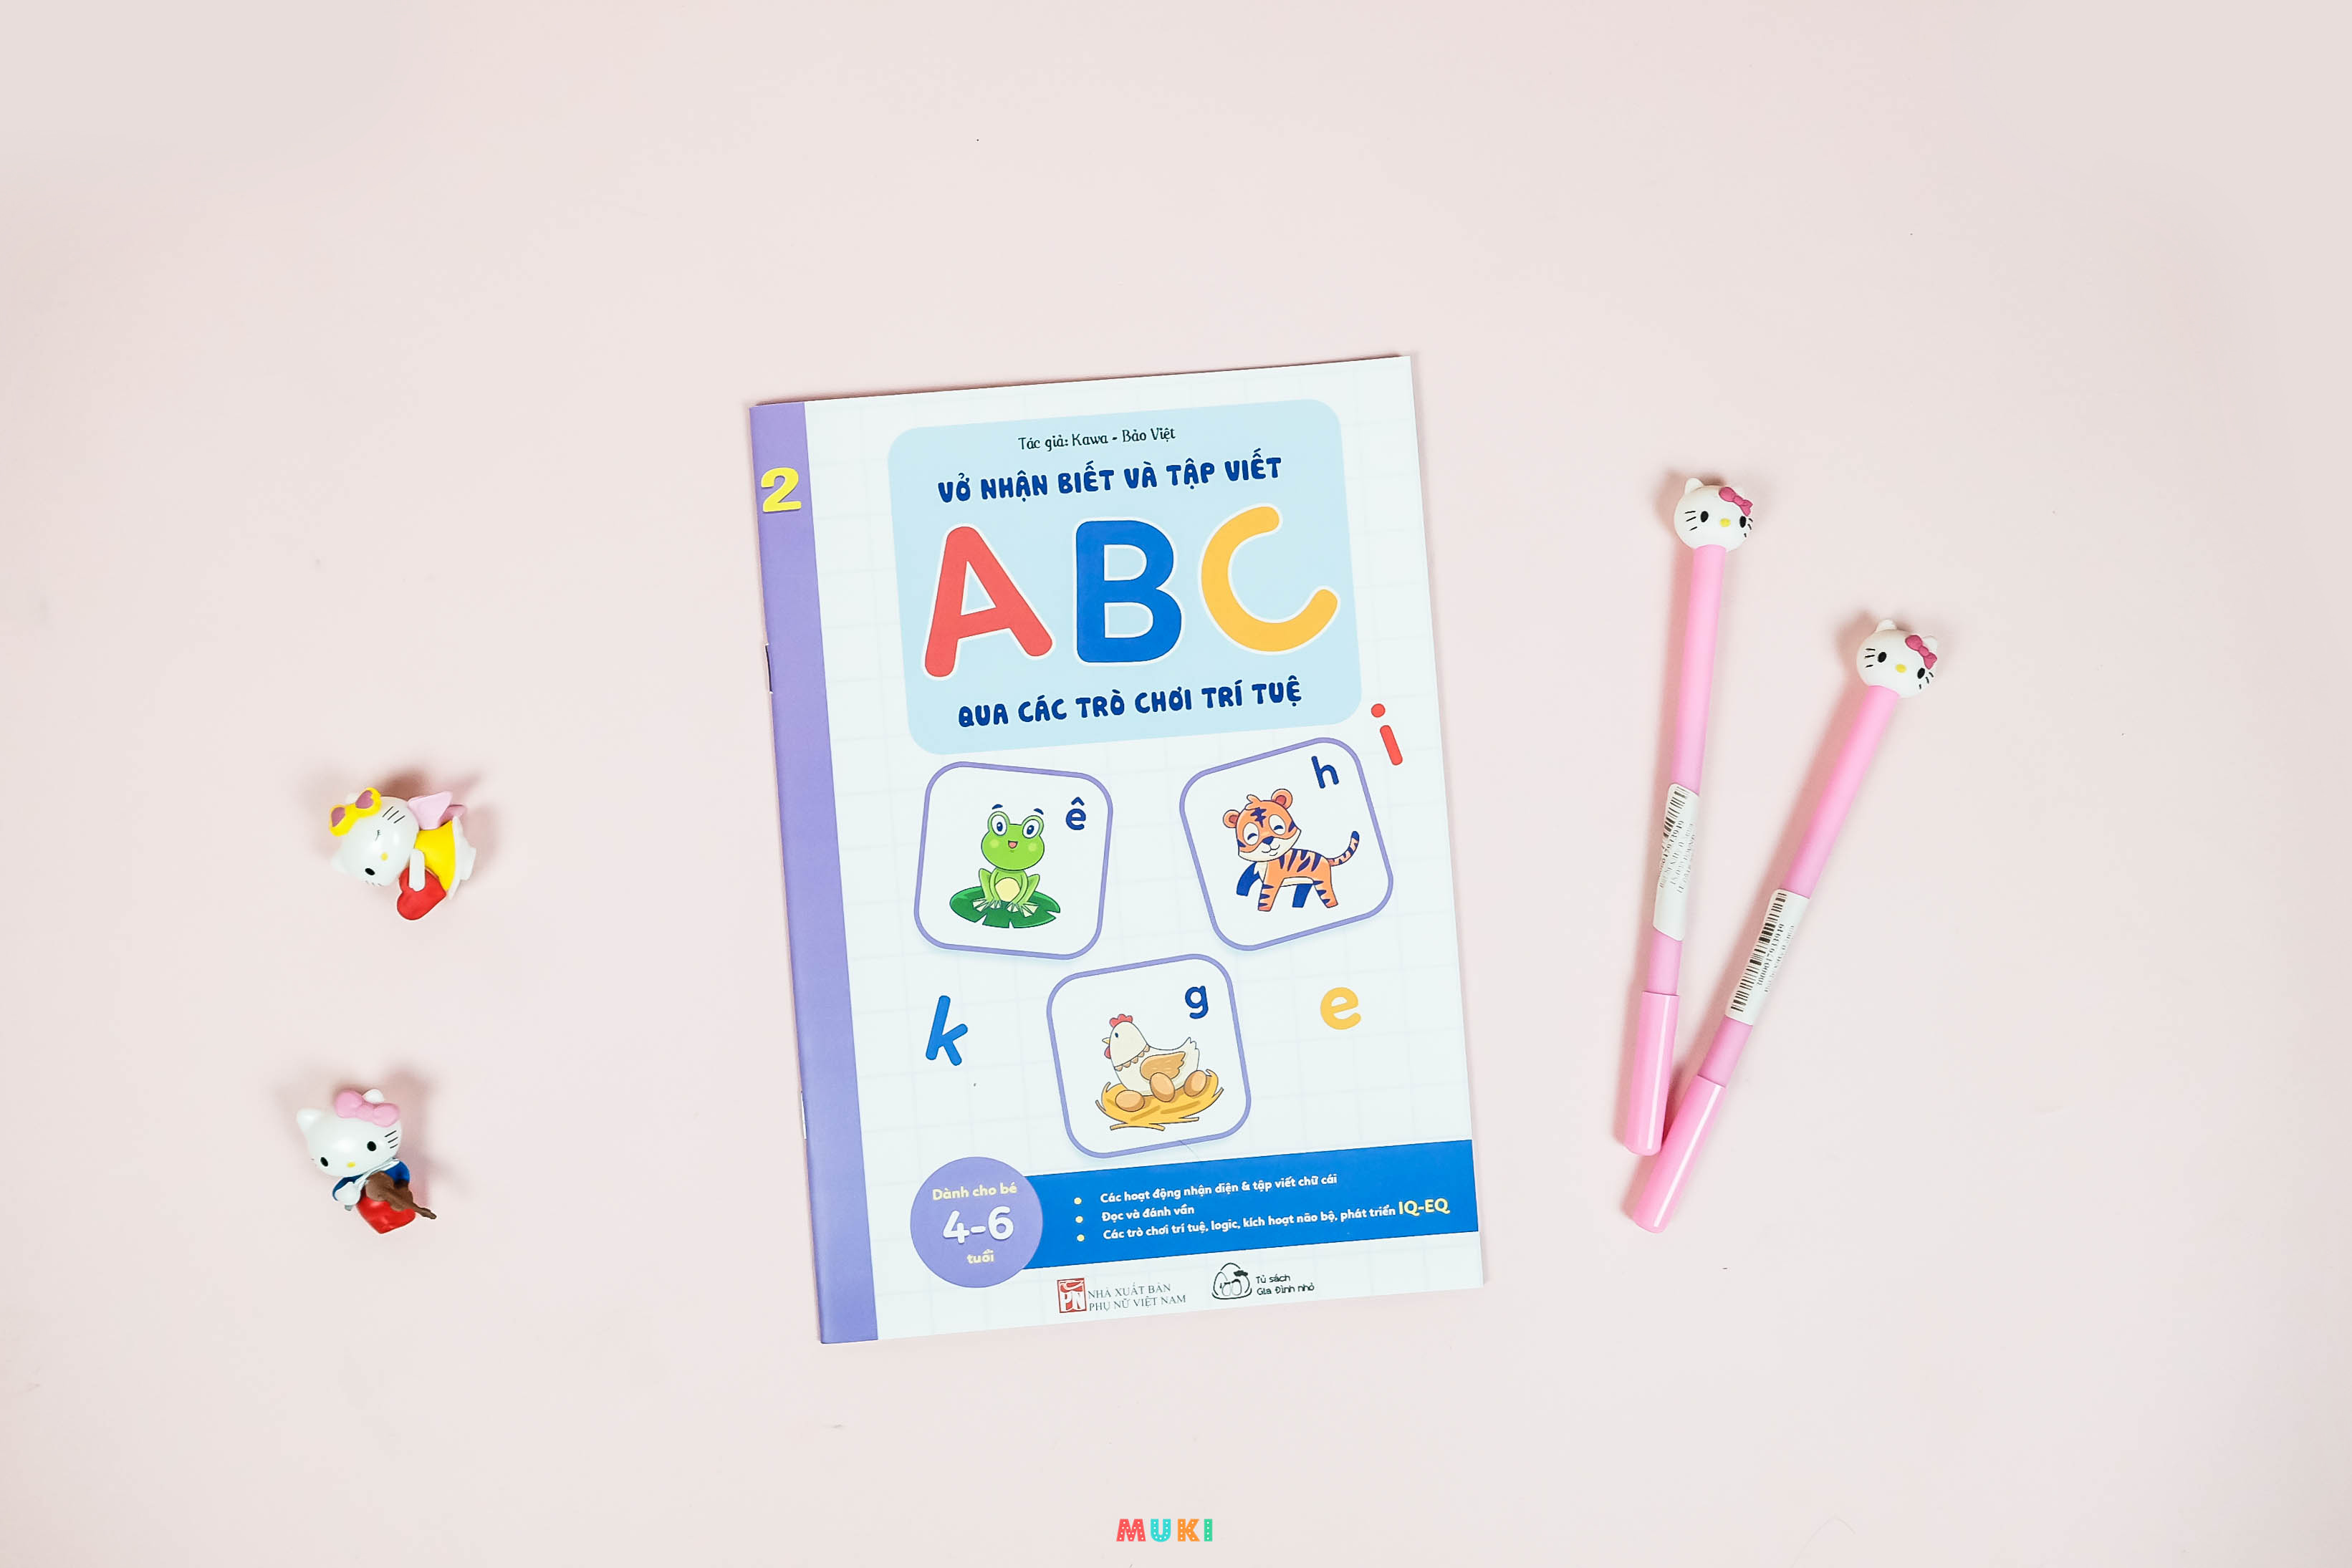 Bộ sách 05 cuốn Phát triển kĩ năng ( Biên soạn theo chương trình mầm non mới): Vở nhận biết và tập viết ABC qua các trò chơi trí tuệ (3+)